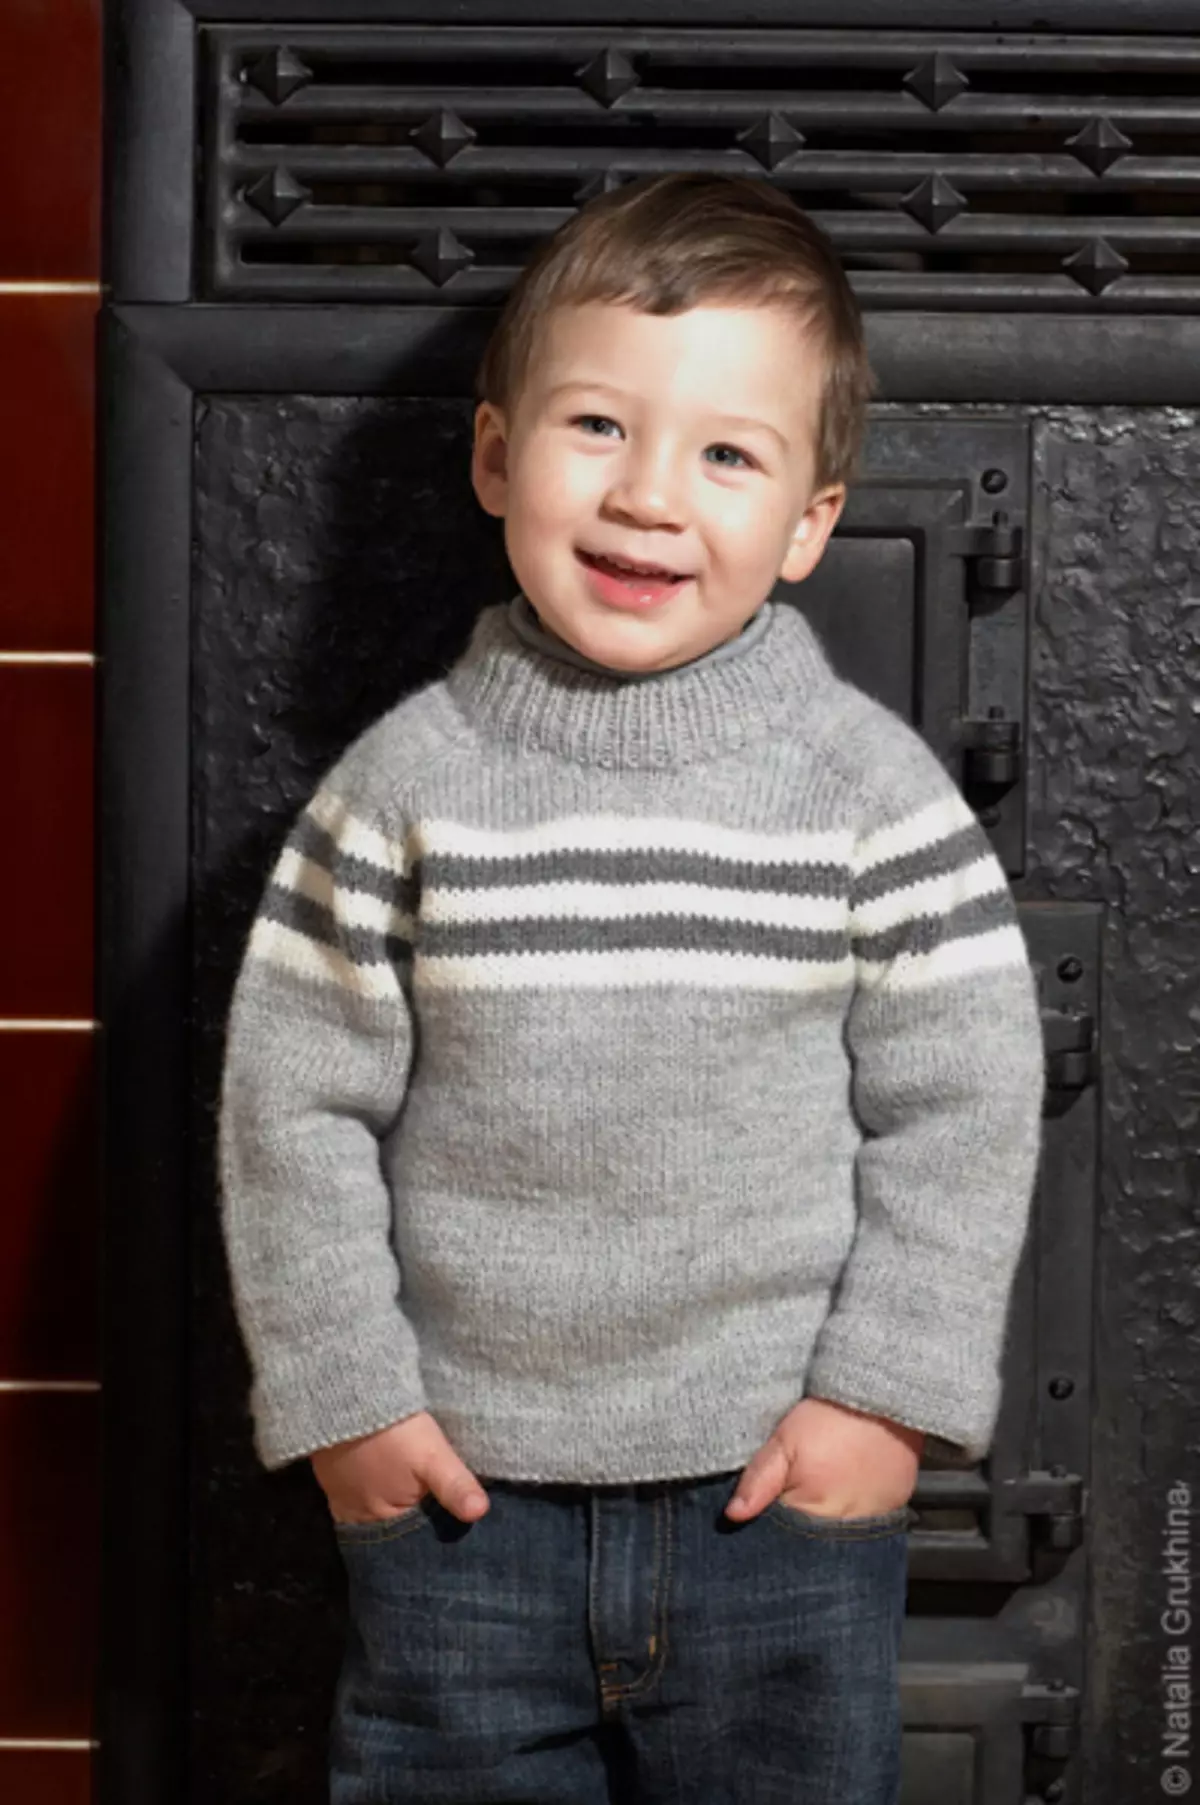 Џемпер за дечака са иглима плетења: Рела за бебу 1-3 године са фотографијама и видео записима